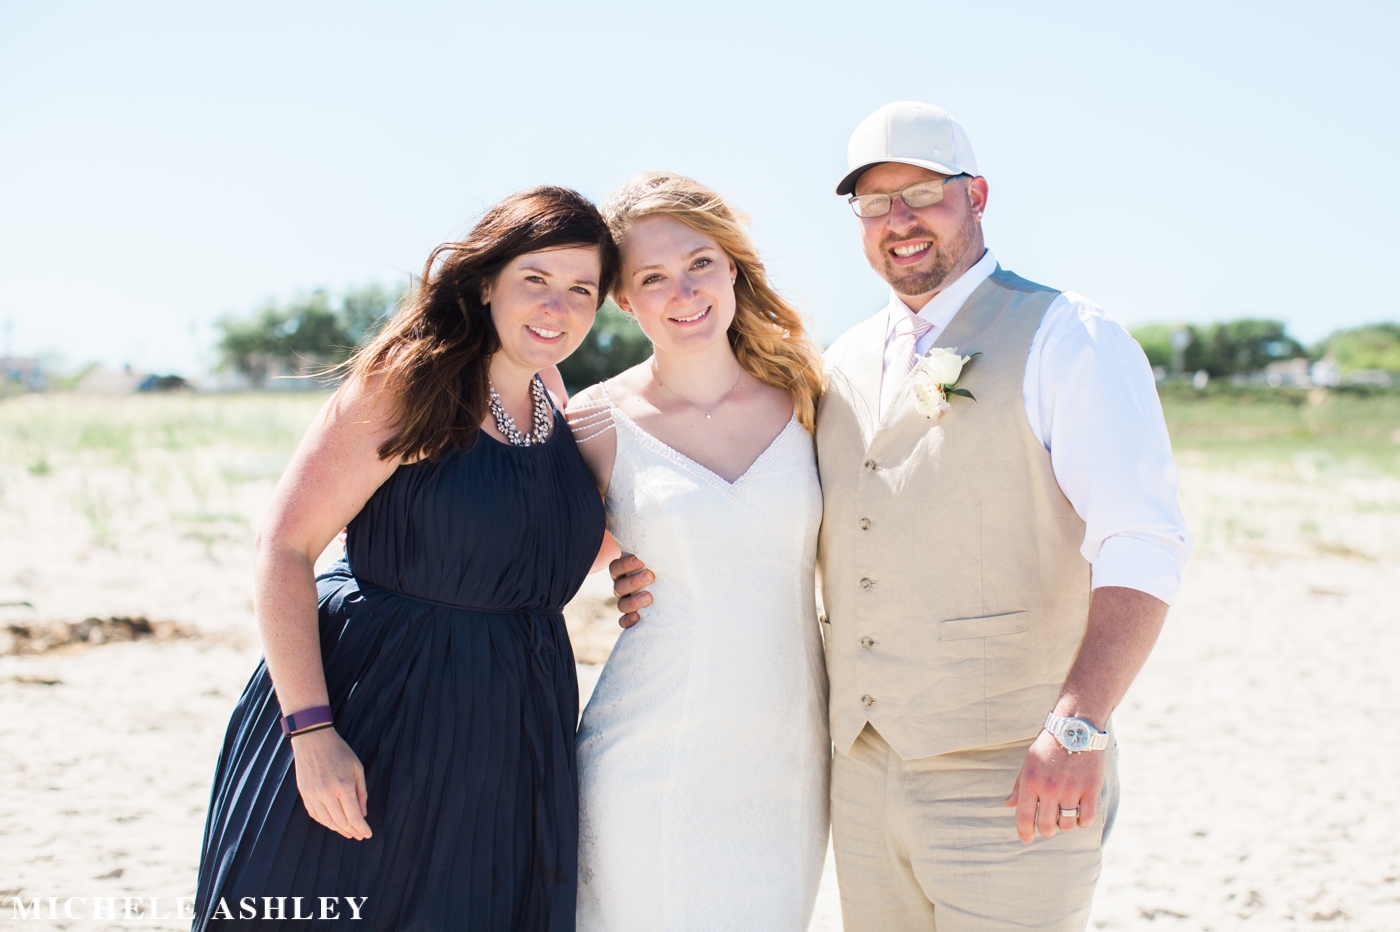 Chatham Wedding Photography | Michele Ashley Photography 33